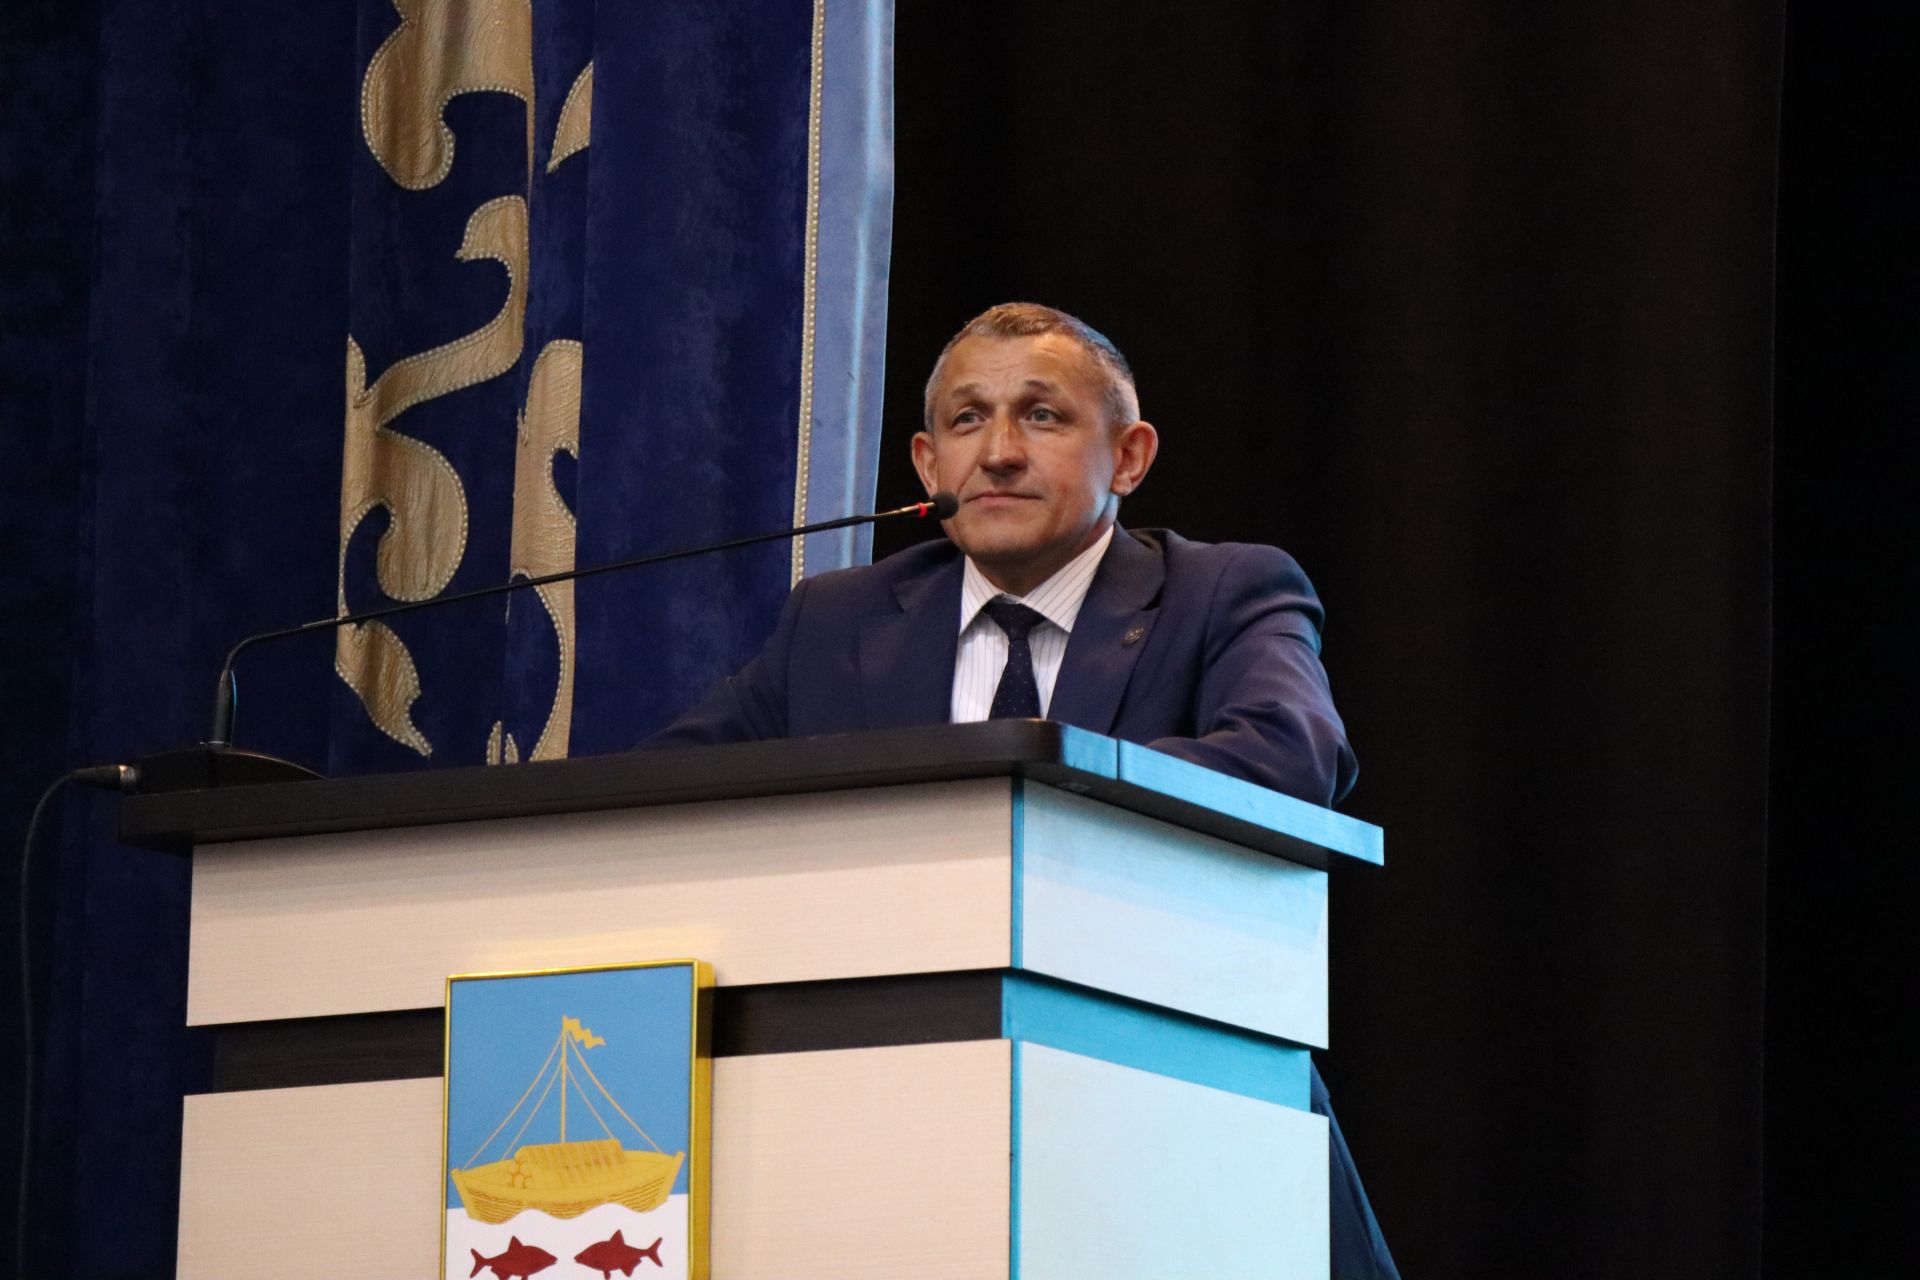 Хабир Иштиряков высоко оценил работу Совета ветеранов Лаишевского района